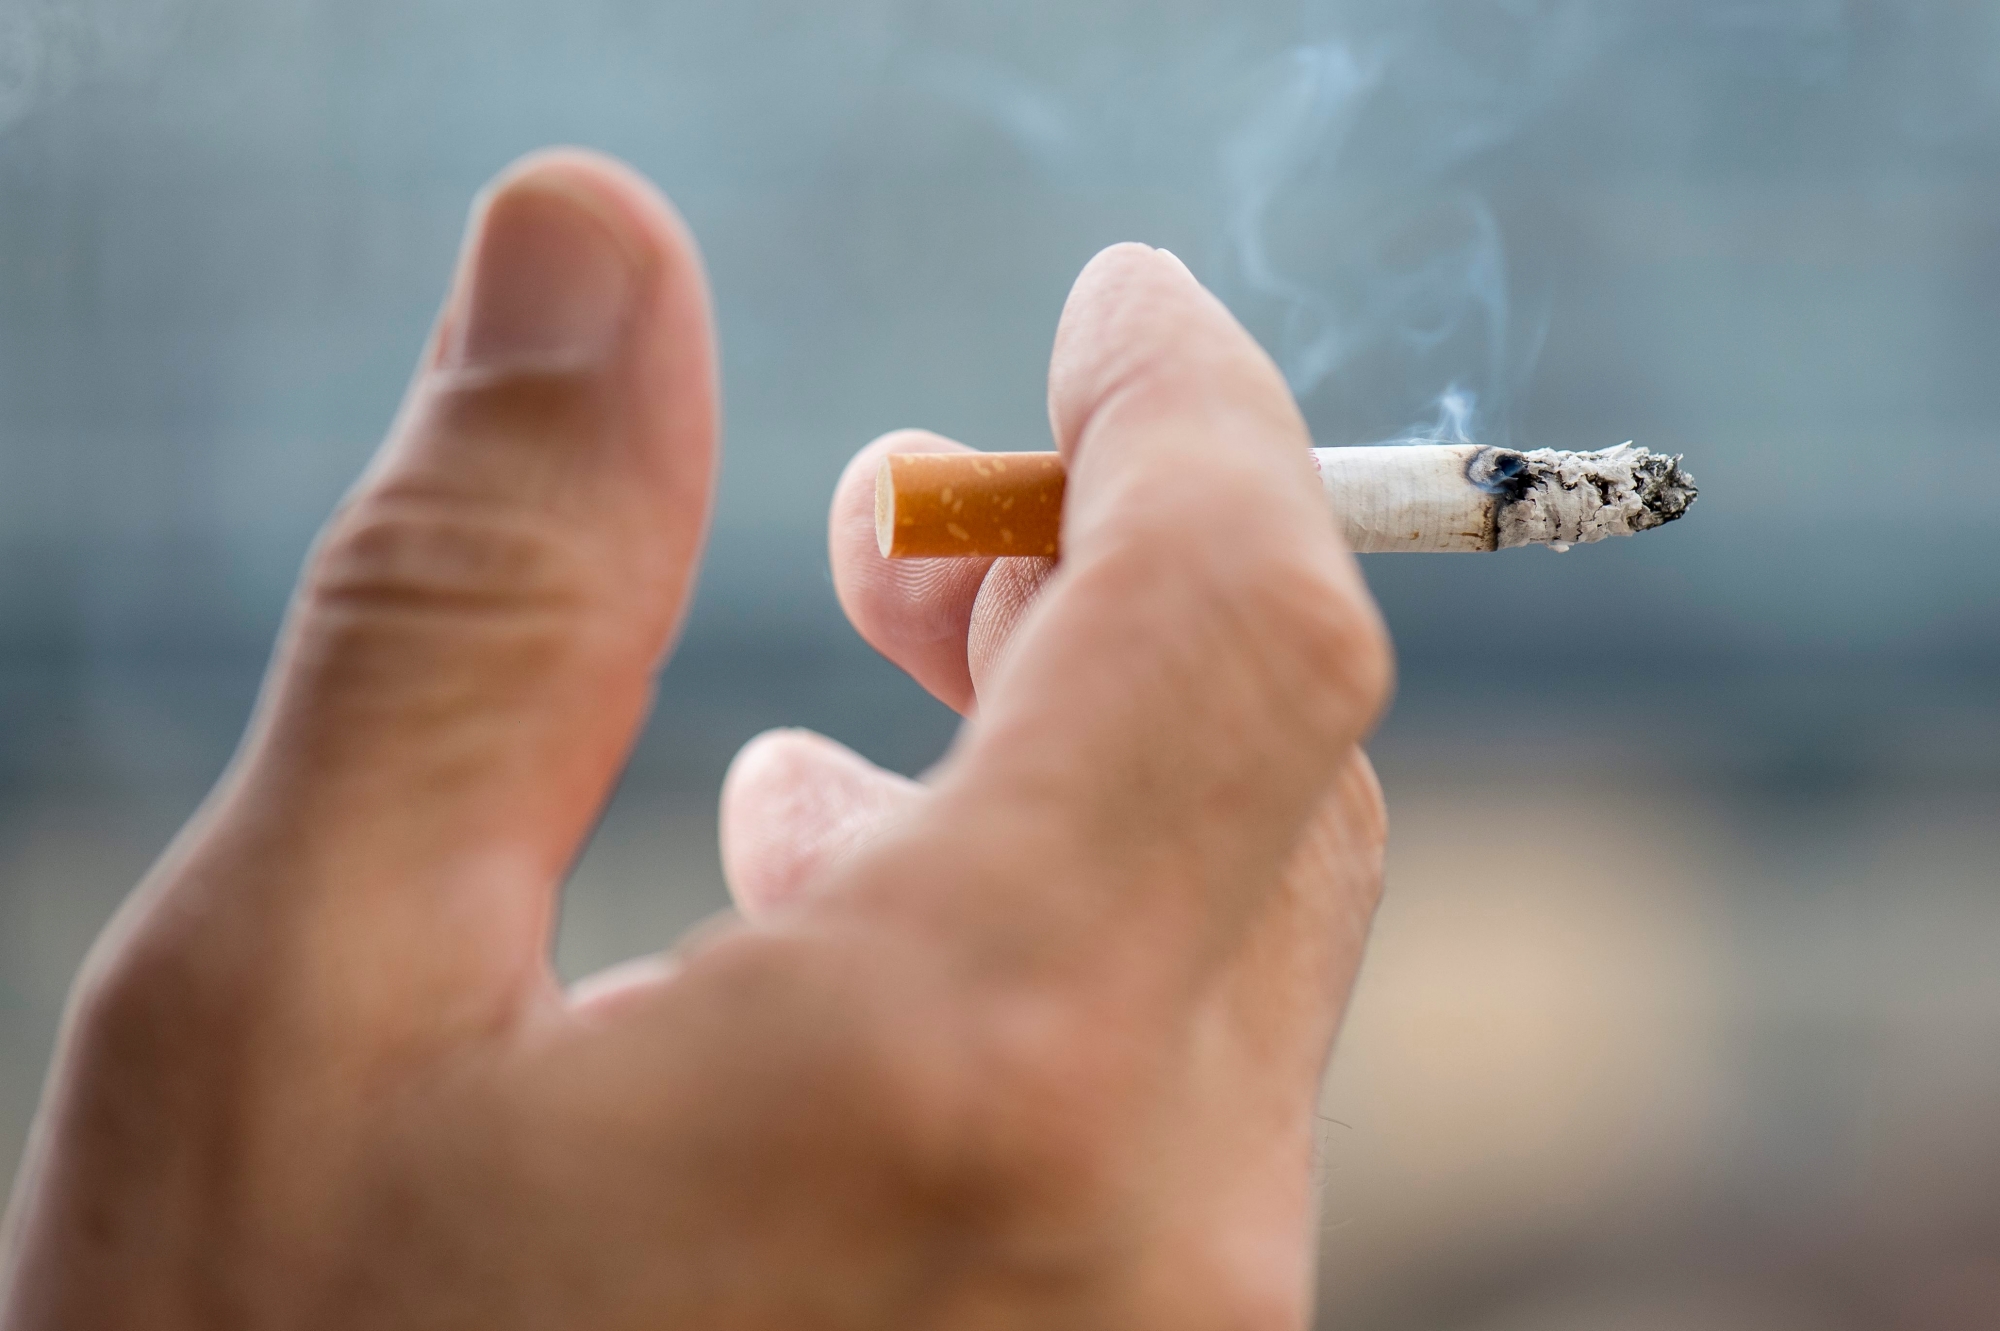 Personne en train de fumer une cigarette

Neuchatel, le 31 mars 2016
Photo: Lucas Vuitel CIGARETTE